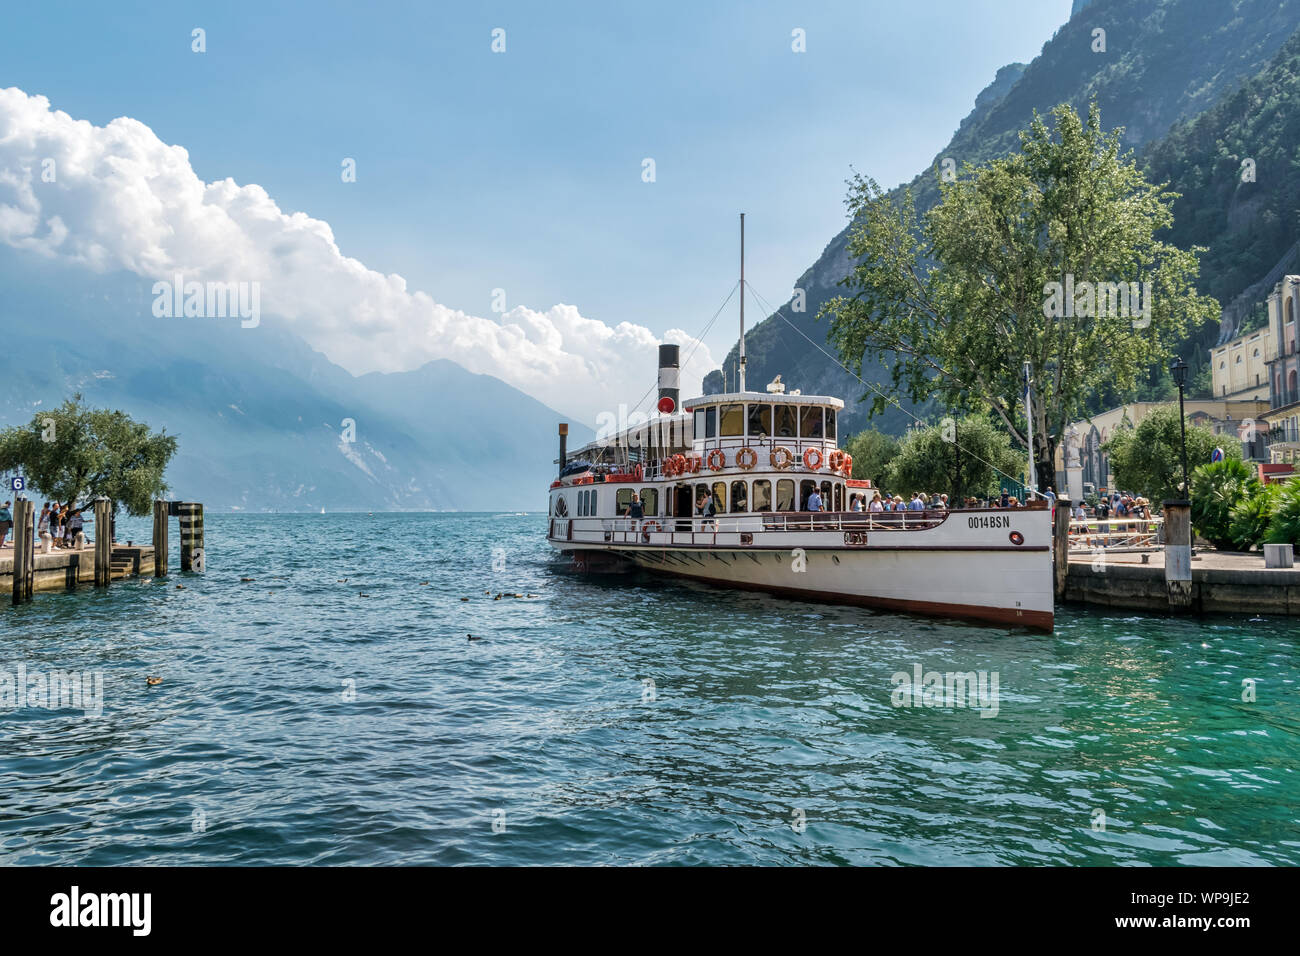 Riva del Garda, Italy -  Aug 1, 2019: An old paddle steamer boat on Lake Garda at Riva del Garda Stock Photo